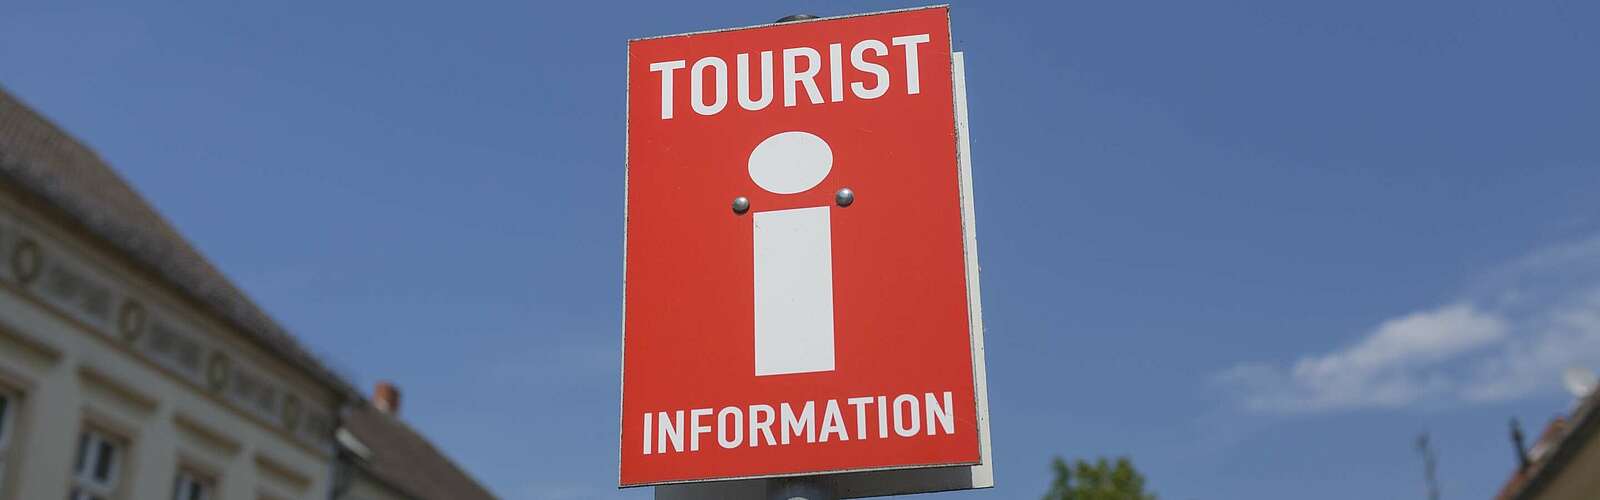 Schild der Touristinformation,
        
    

        Foto: TMB-Fotoarchiv/Steffen Lehmann